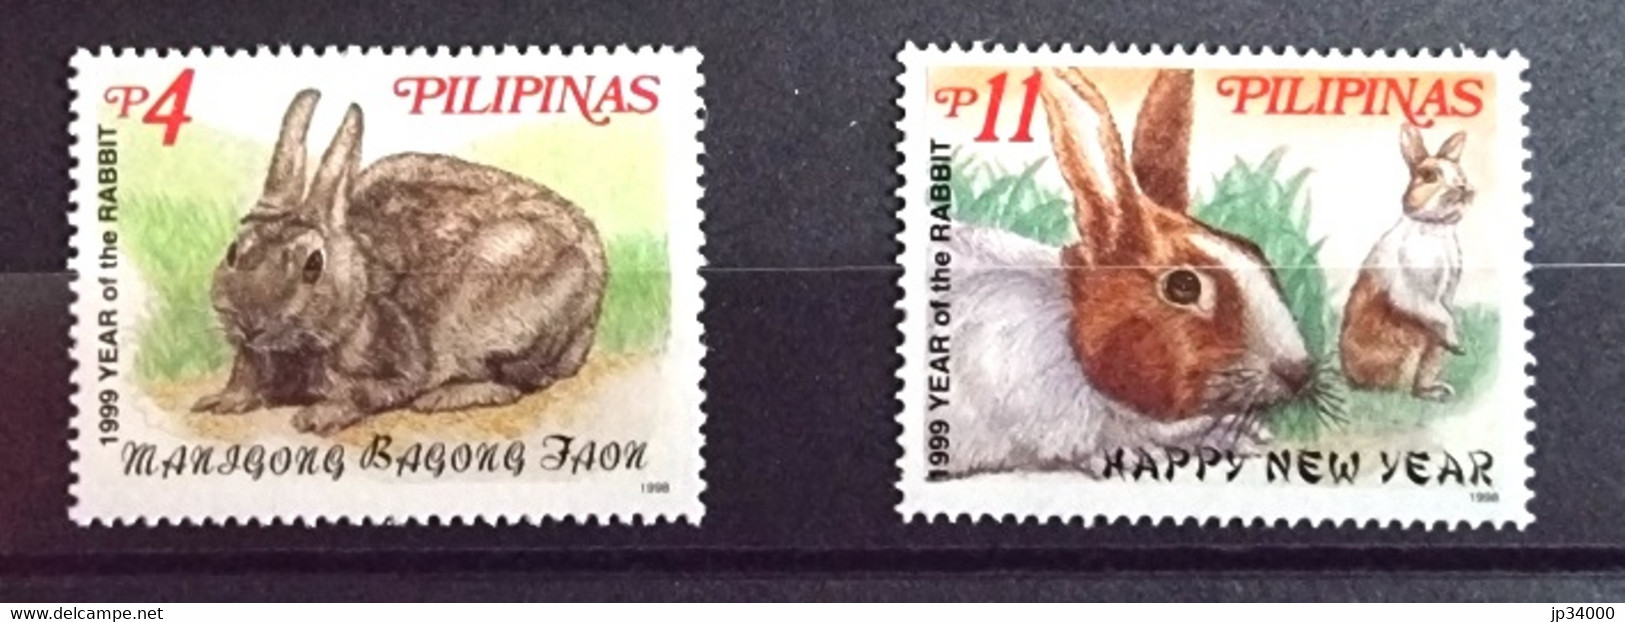 PHILIPPINES-PILIPINAS Lapins, Lapin, Rabbit, Conejo. Année Du Lapin 1999 2 Valeurs Dentelé. ** Neuf Sans Charnière - Conigli